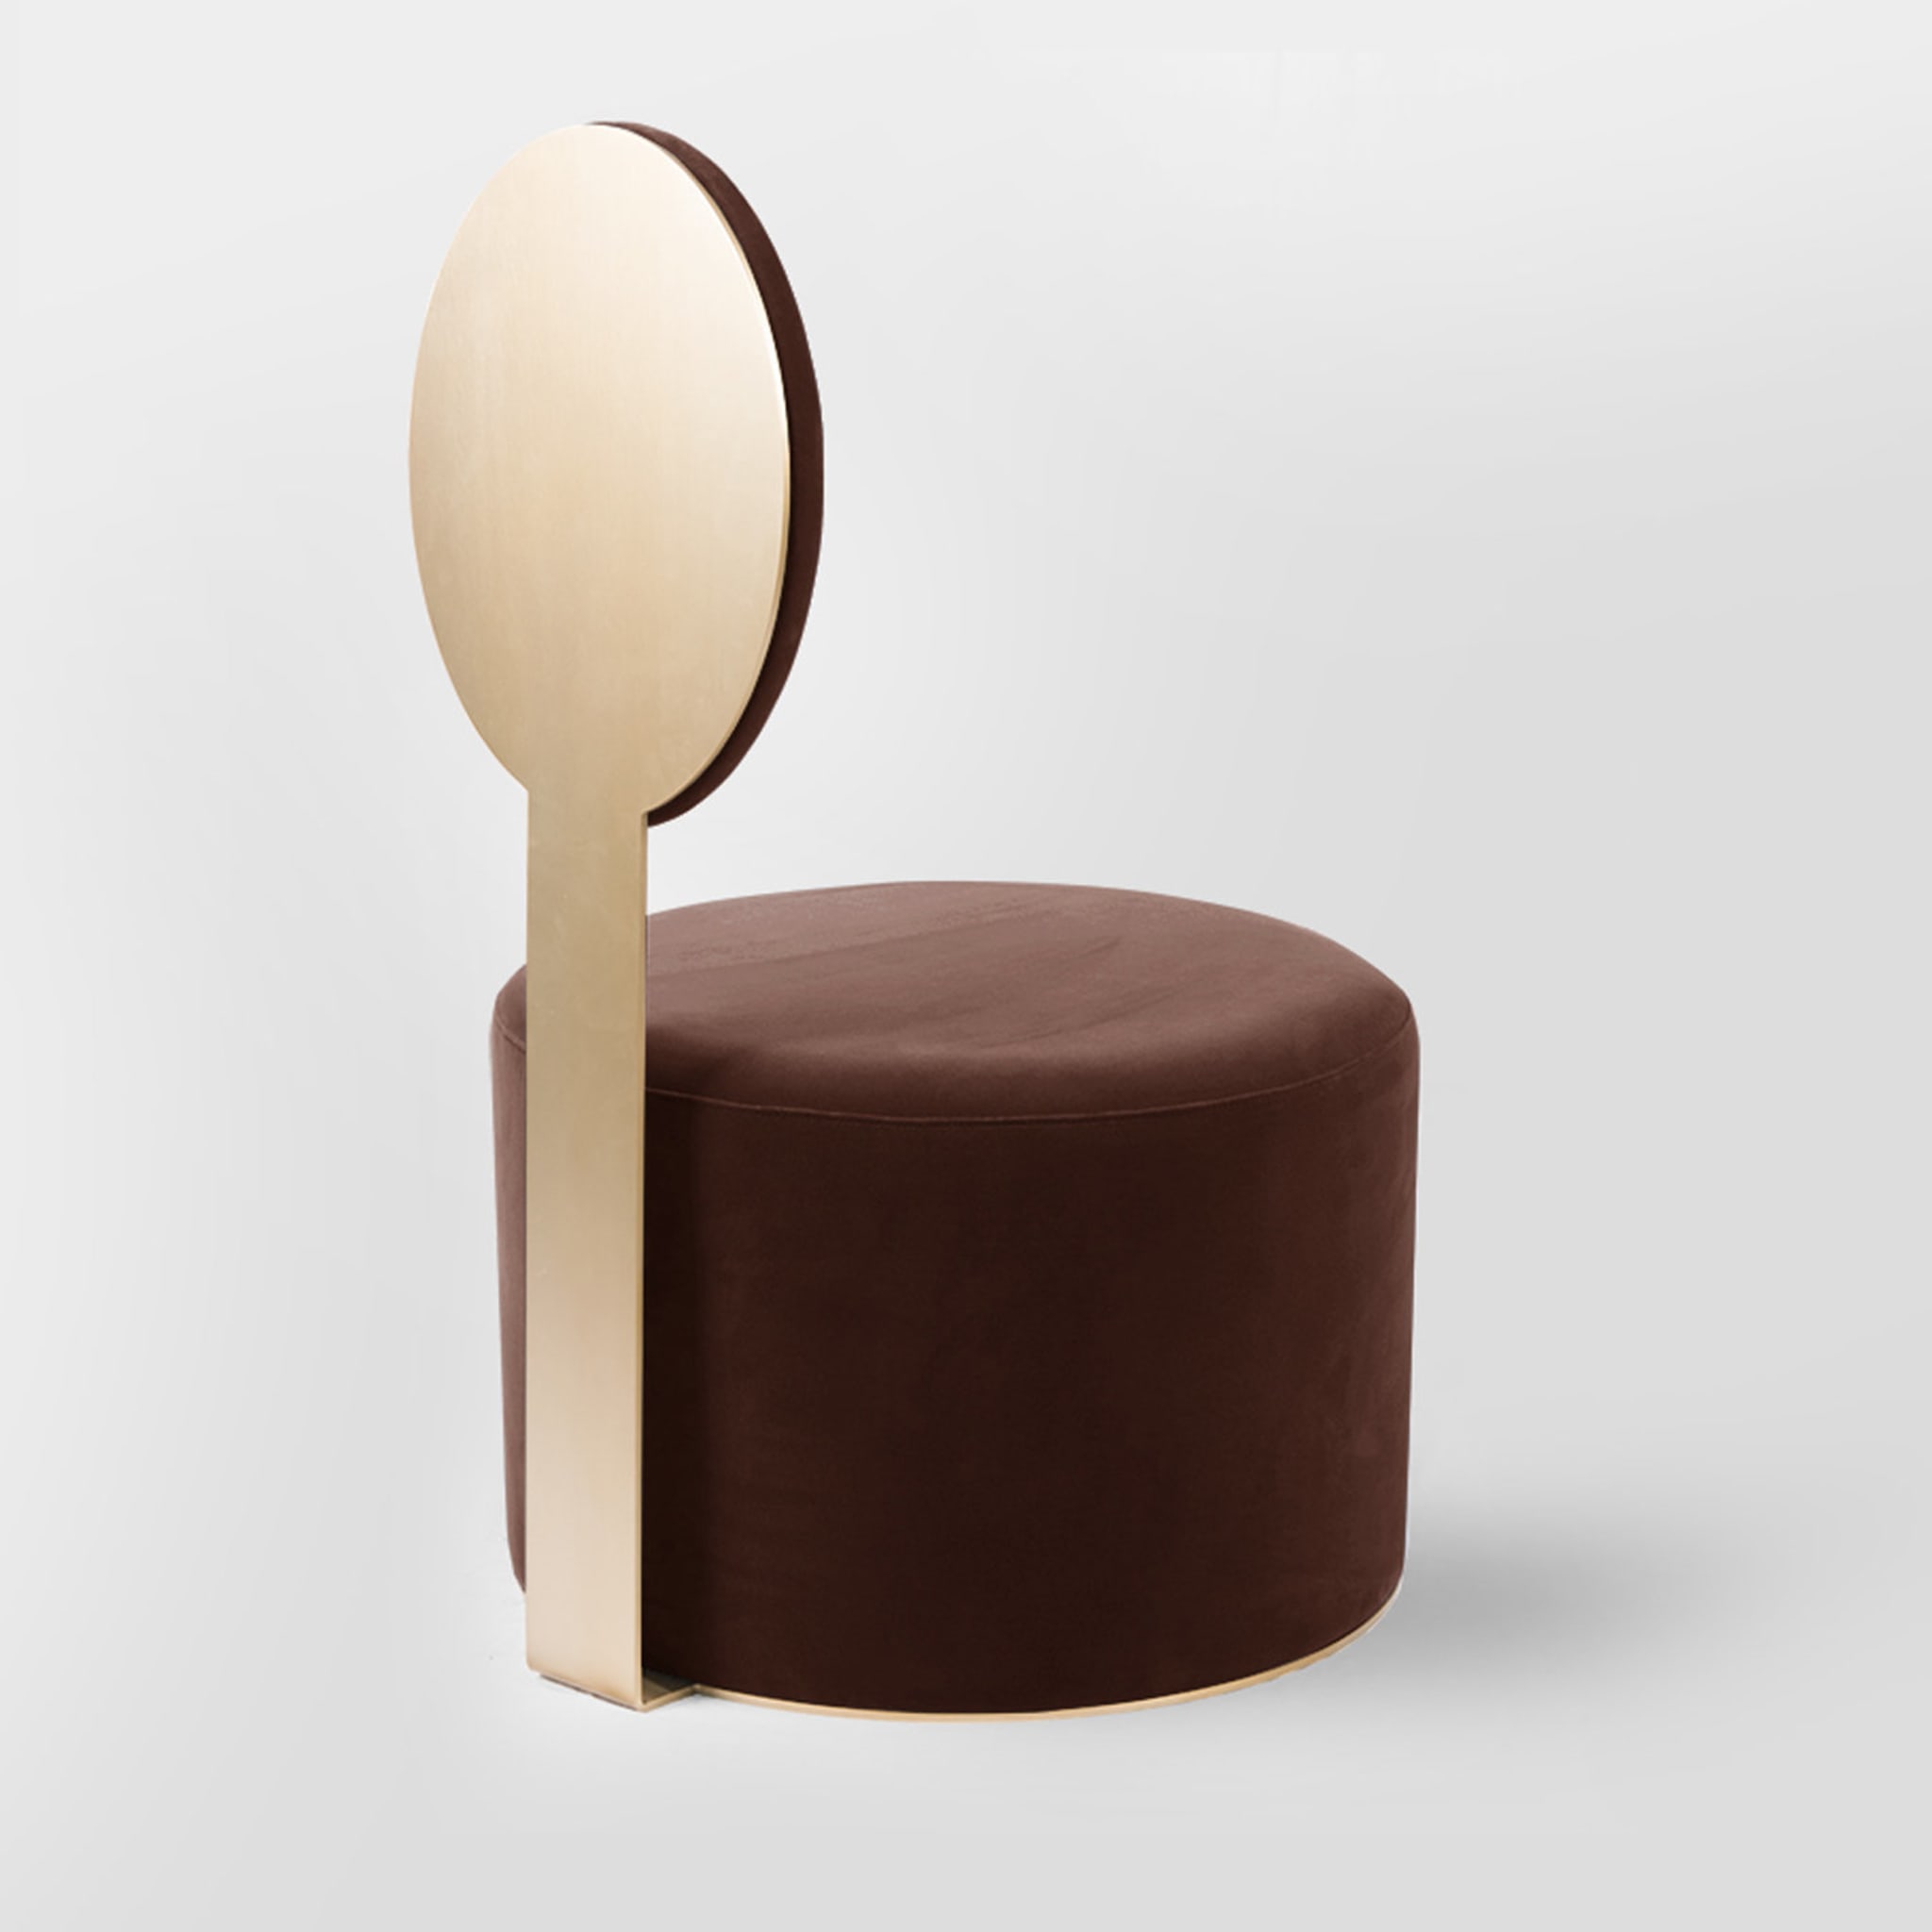 Pop Brown Chair by Artefatto Design Studio - Alternative view 2